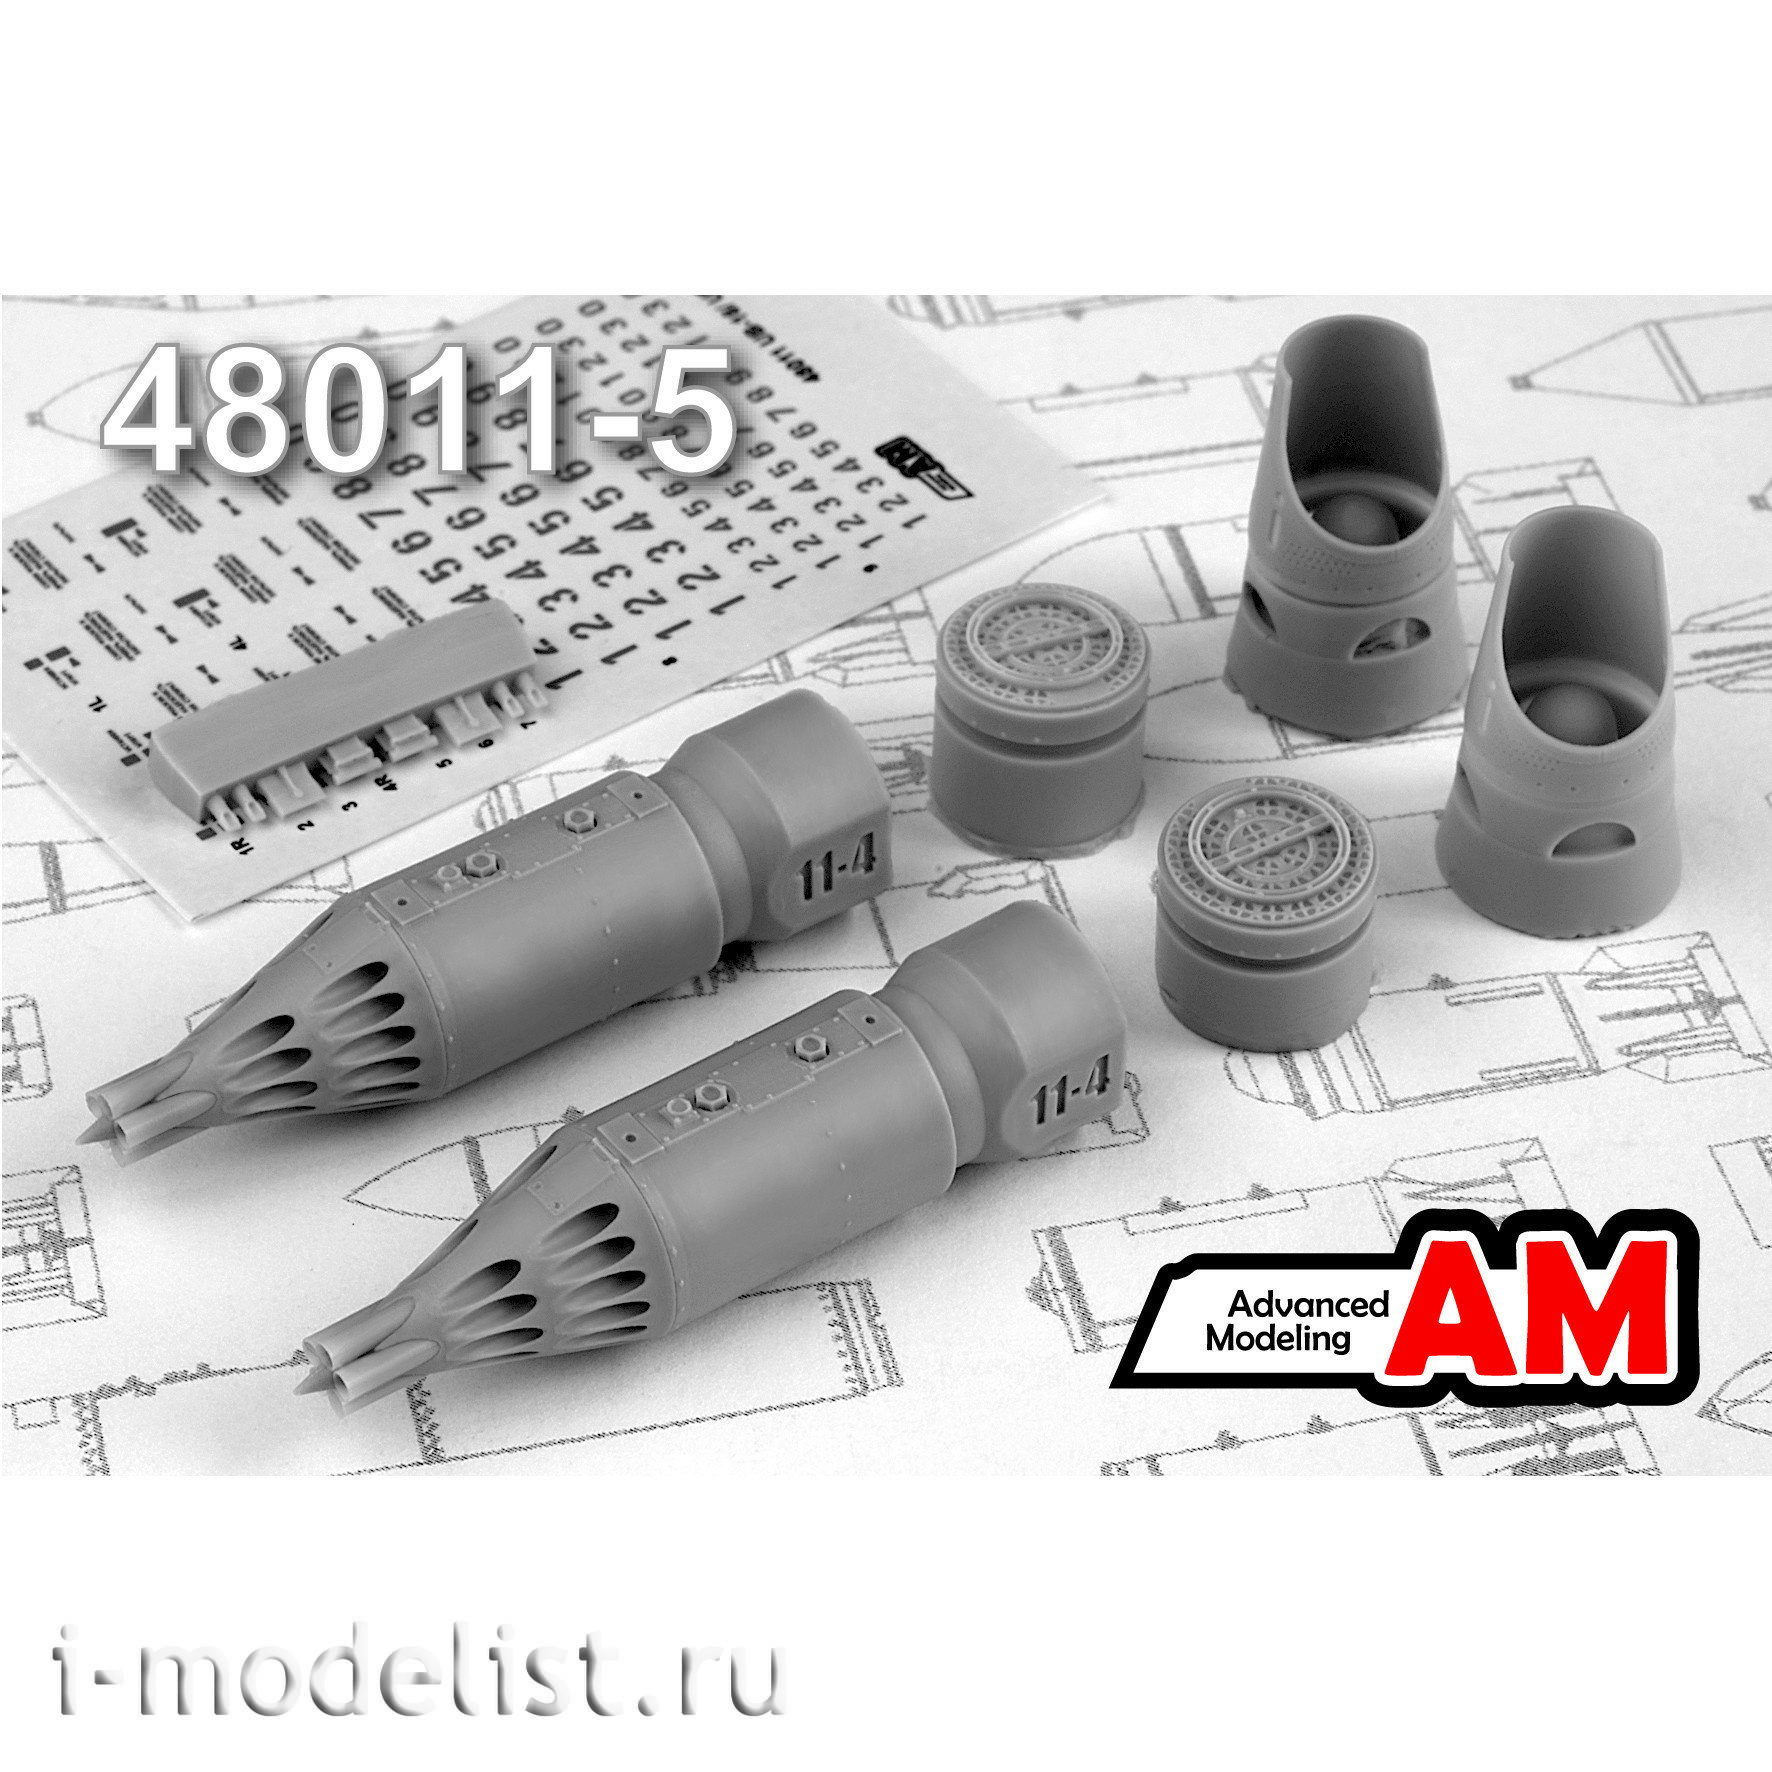 AMC48011-5 Advanced Modeling 1/48 Блок НАР УБ-32А-24 57 мм С-5